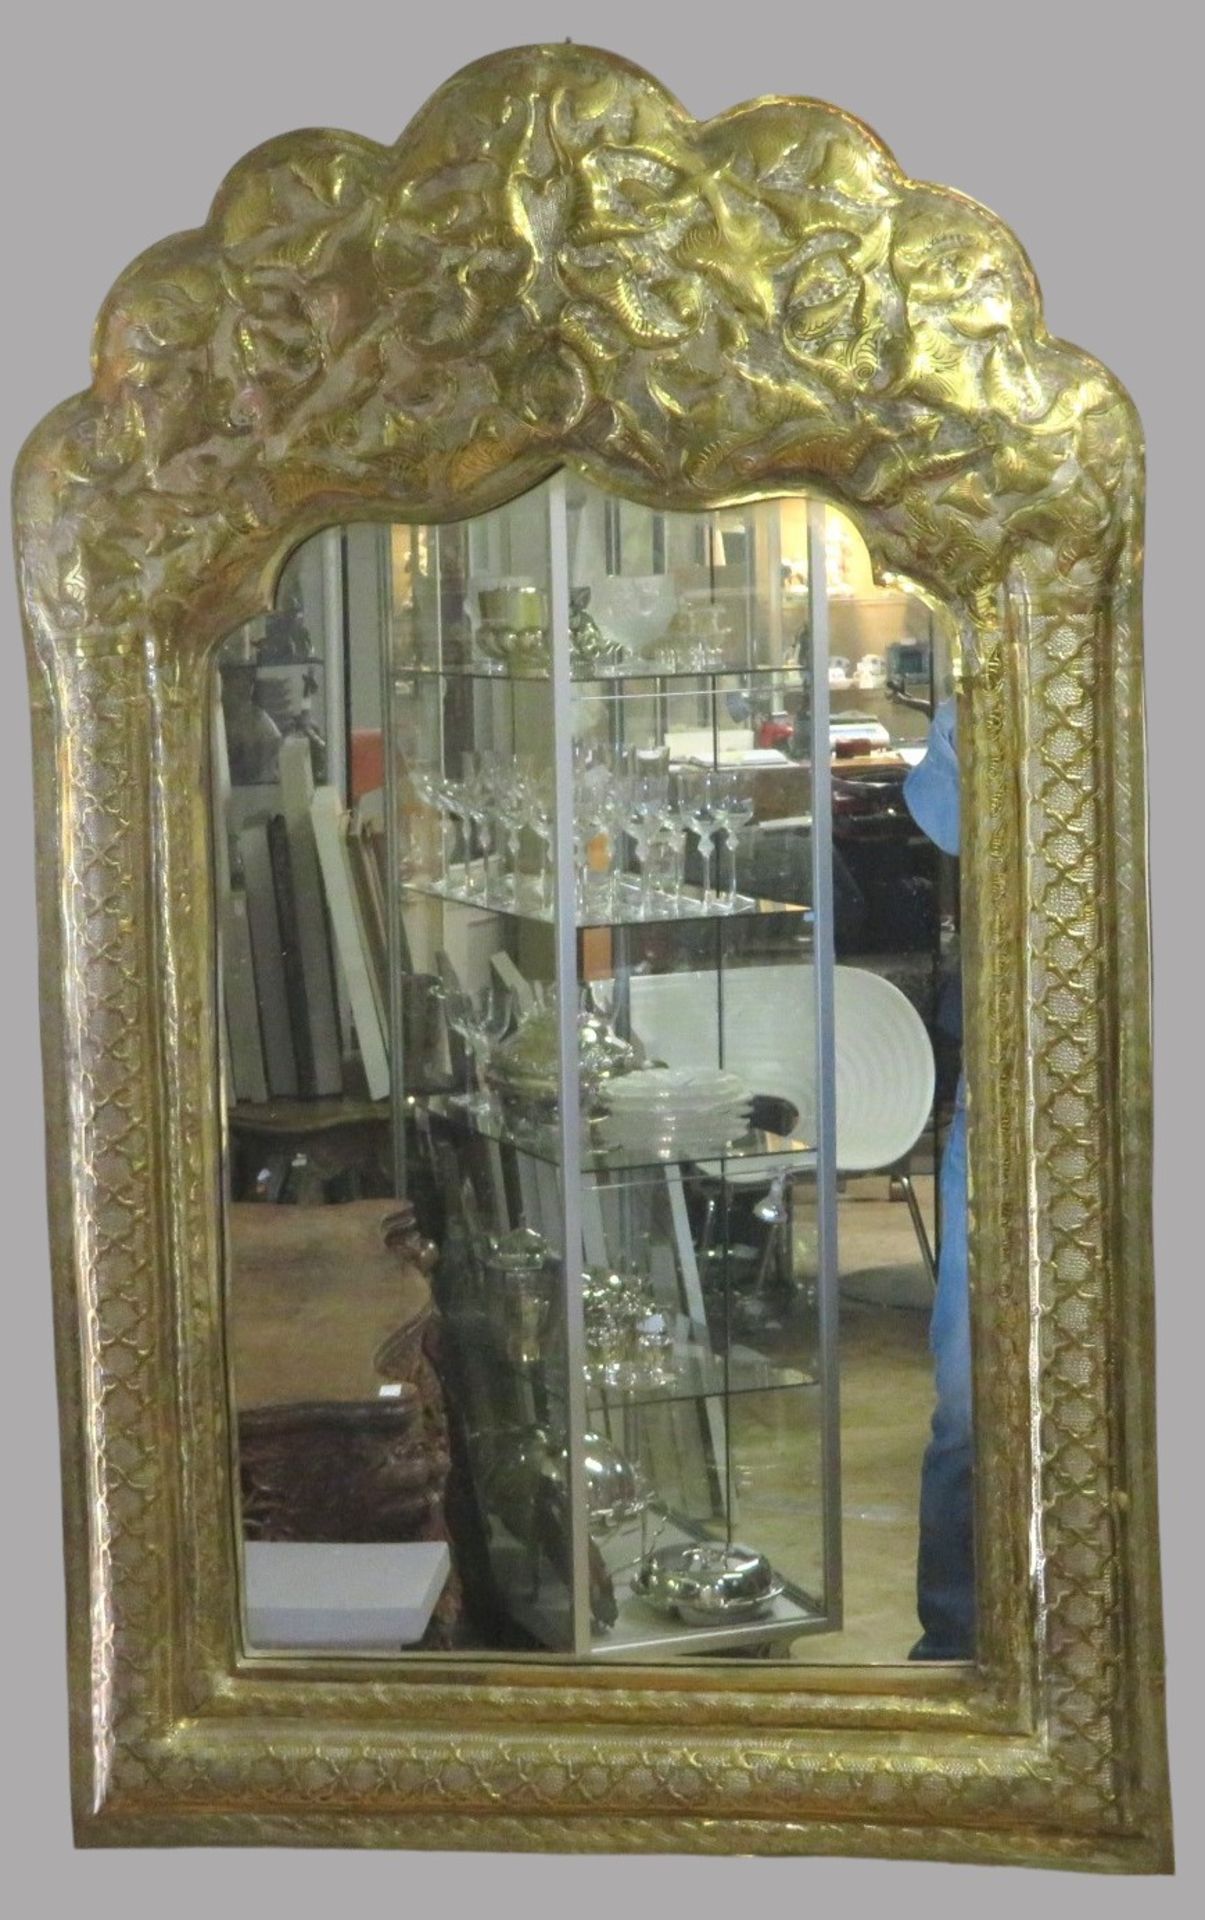 Großer Spiegel, Persien, Messing in floraler Manier handgetrieben, 113 x 69 x 5 cm.